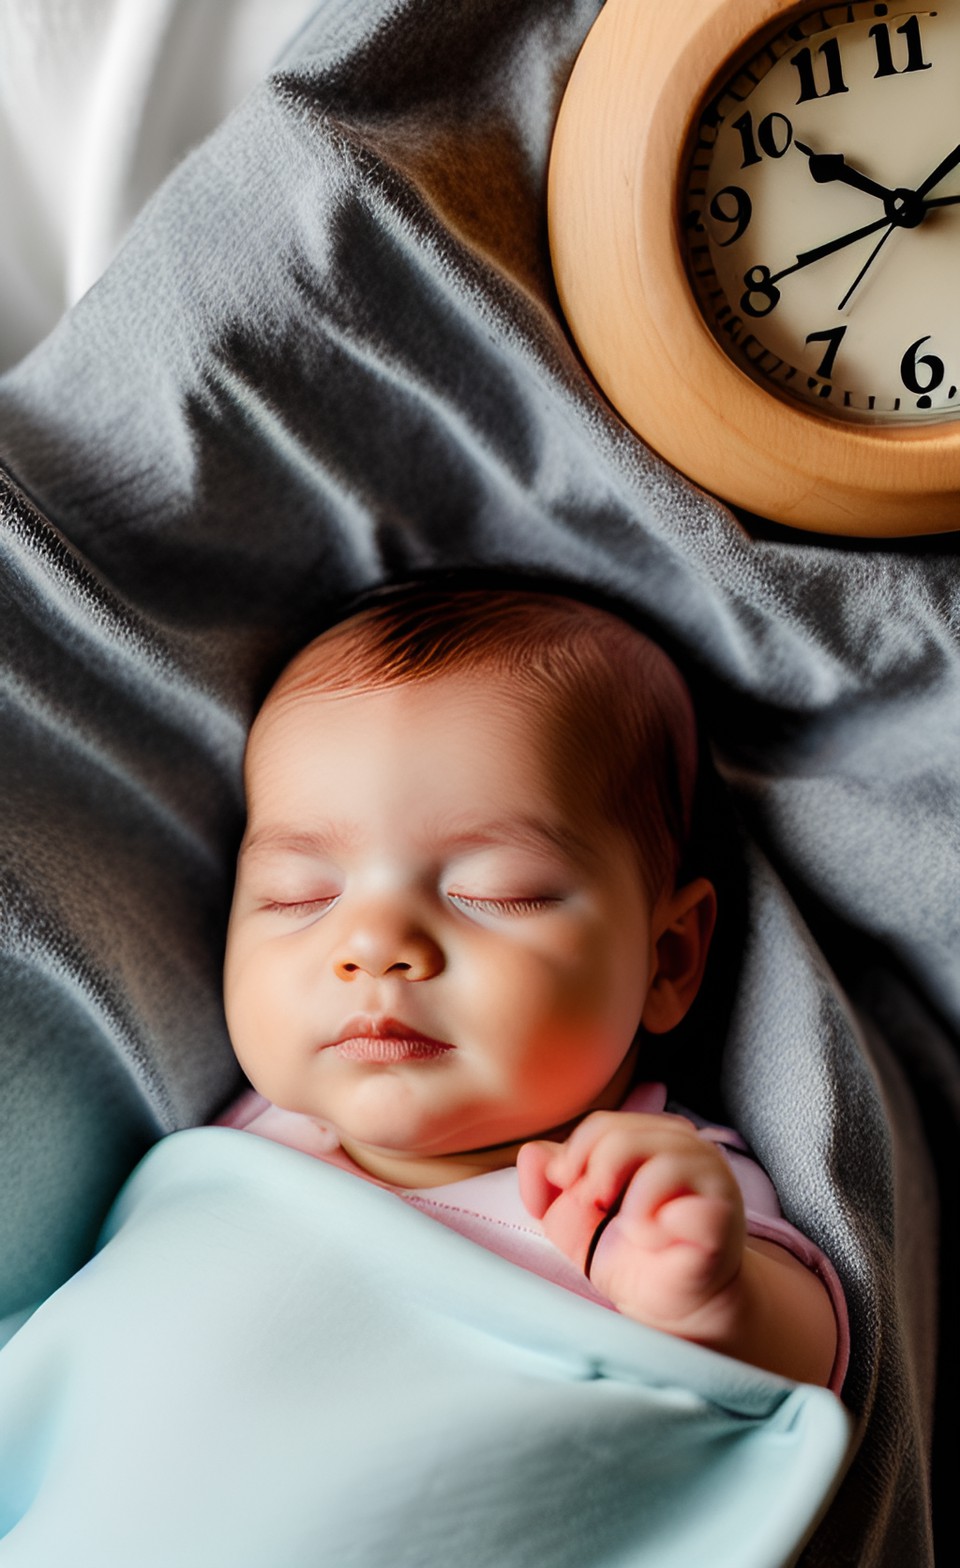 Bébé endormi dans des couvertures après une séance de massage bébé, avec une horloge en arrière plan.